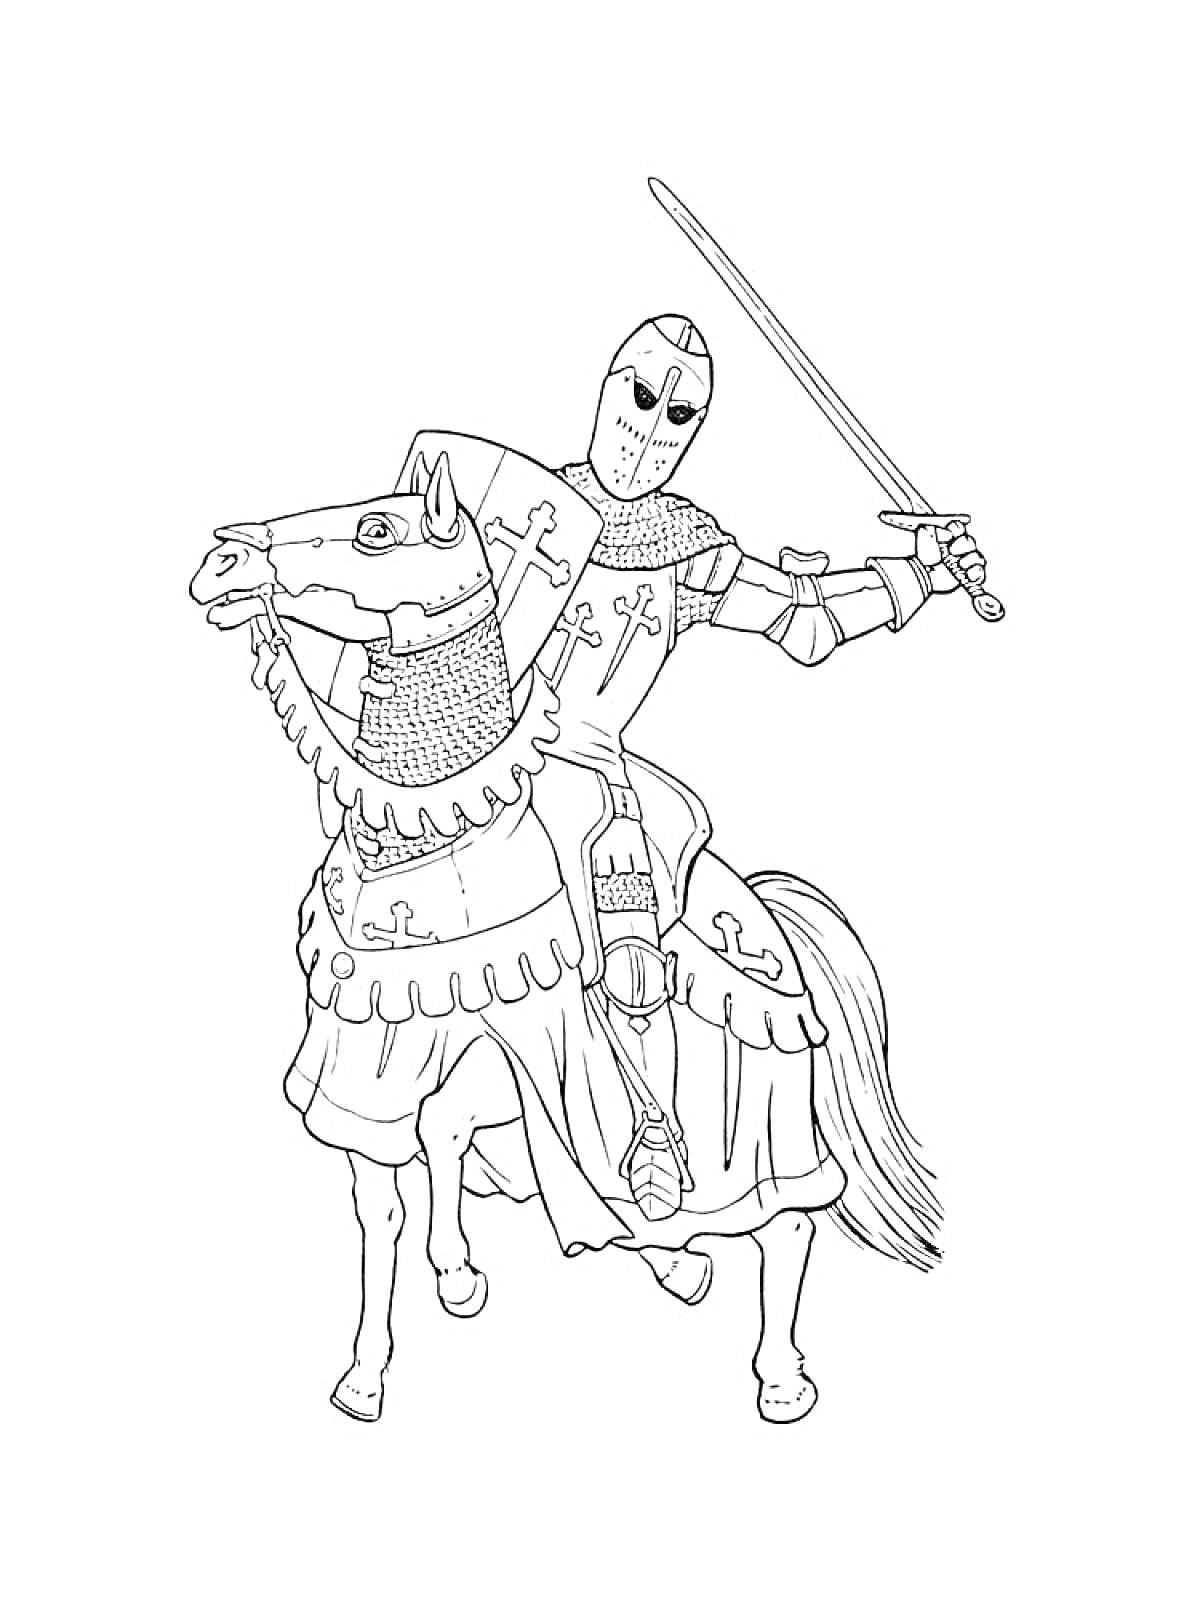 Рыцарь на лошади в доспехах поднимает меч